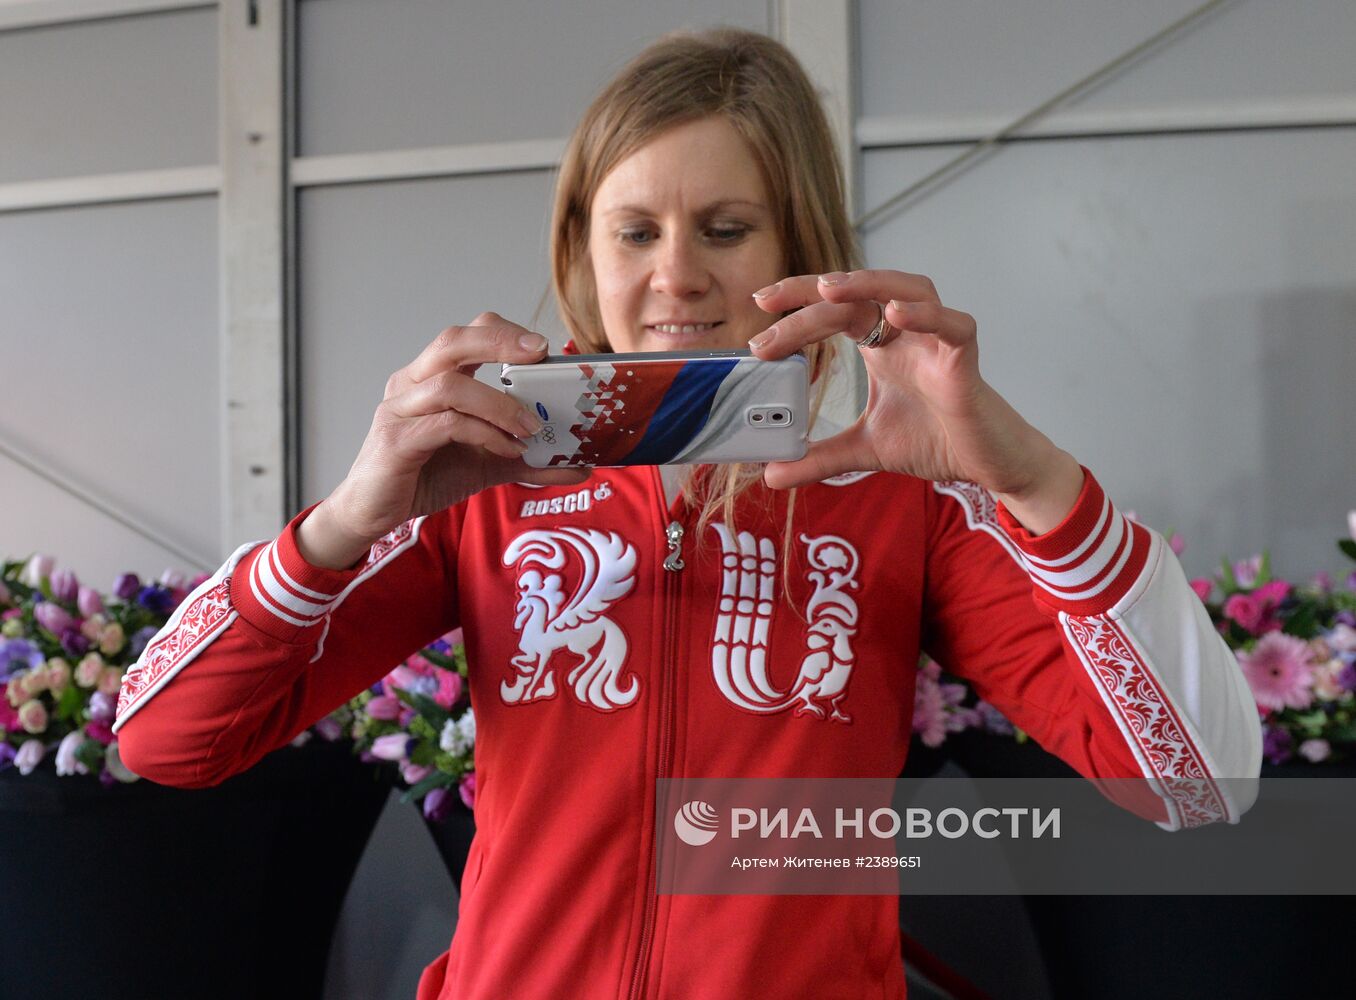 Вручение автомобилей призерам Олимпийских игр в Сочи